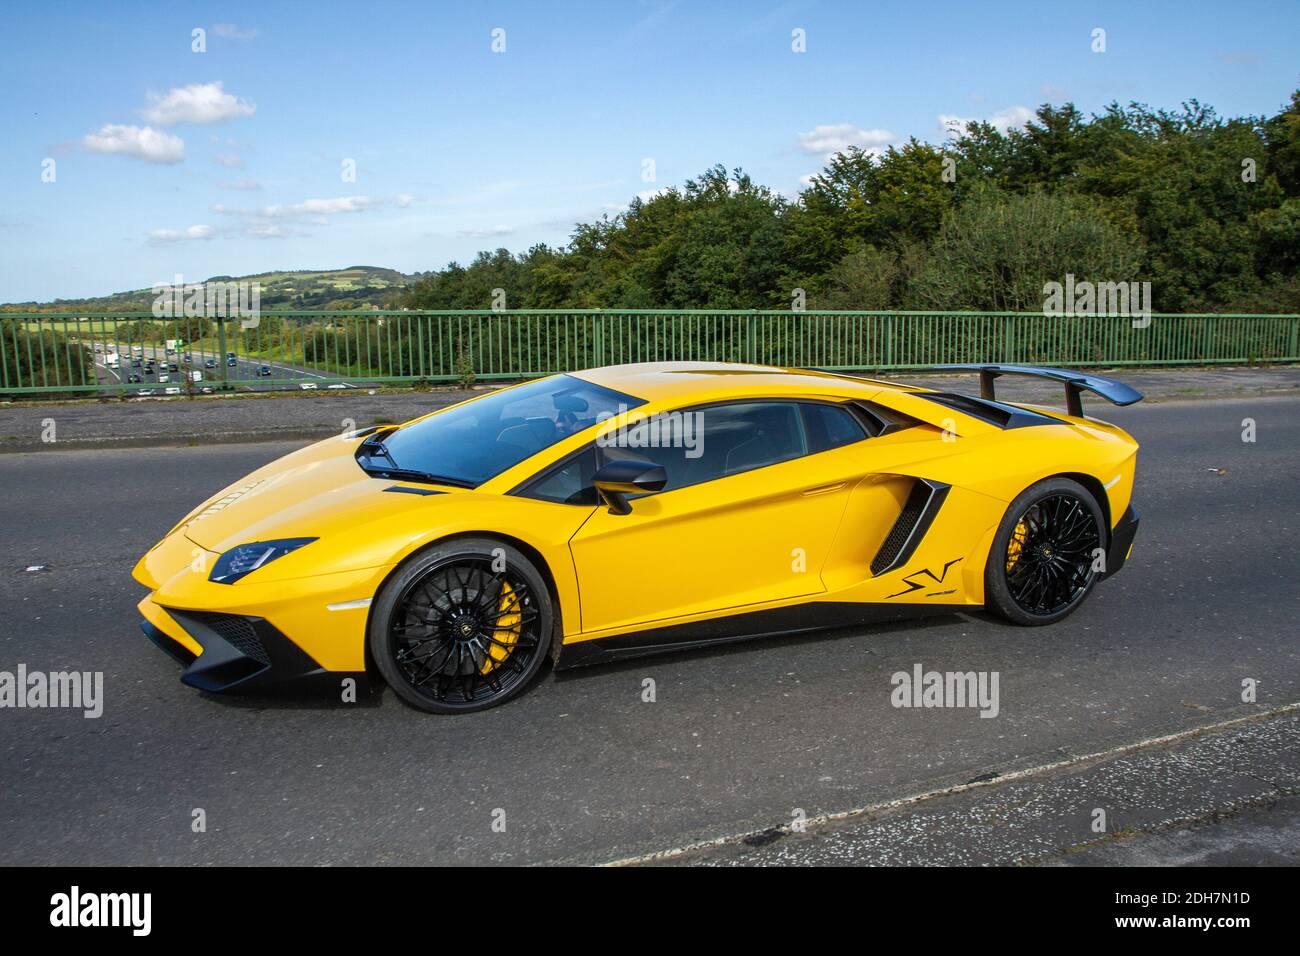 2016 giallo Lamborghini Aventador LP 750-4 SV S-A auto sportiva coupé; veicoli veicolari in movimento, automobili che guidano veicoli su strade del Regno Unito, motori, motori stradali rete autostradale del Regno Unito. Foto Stock